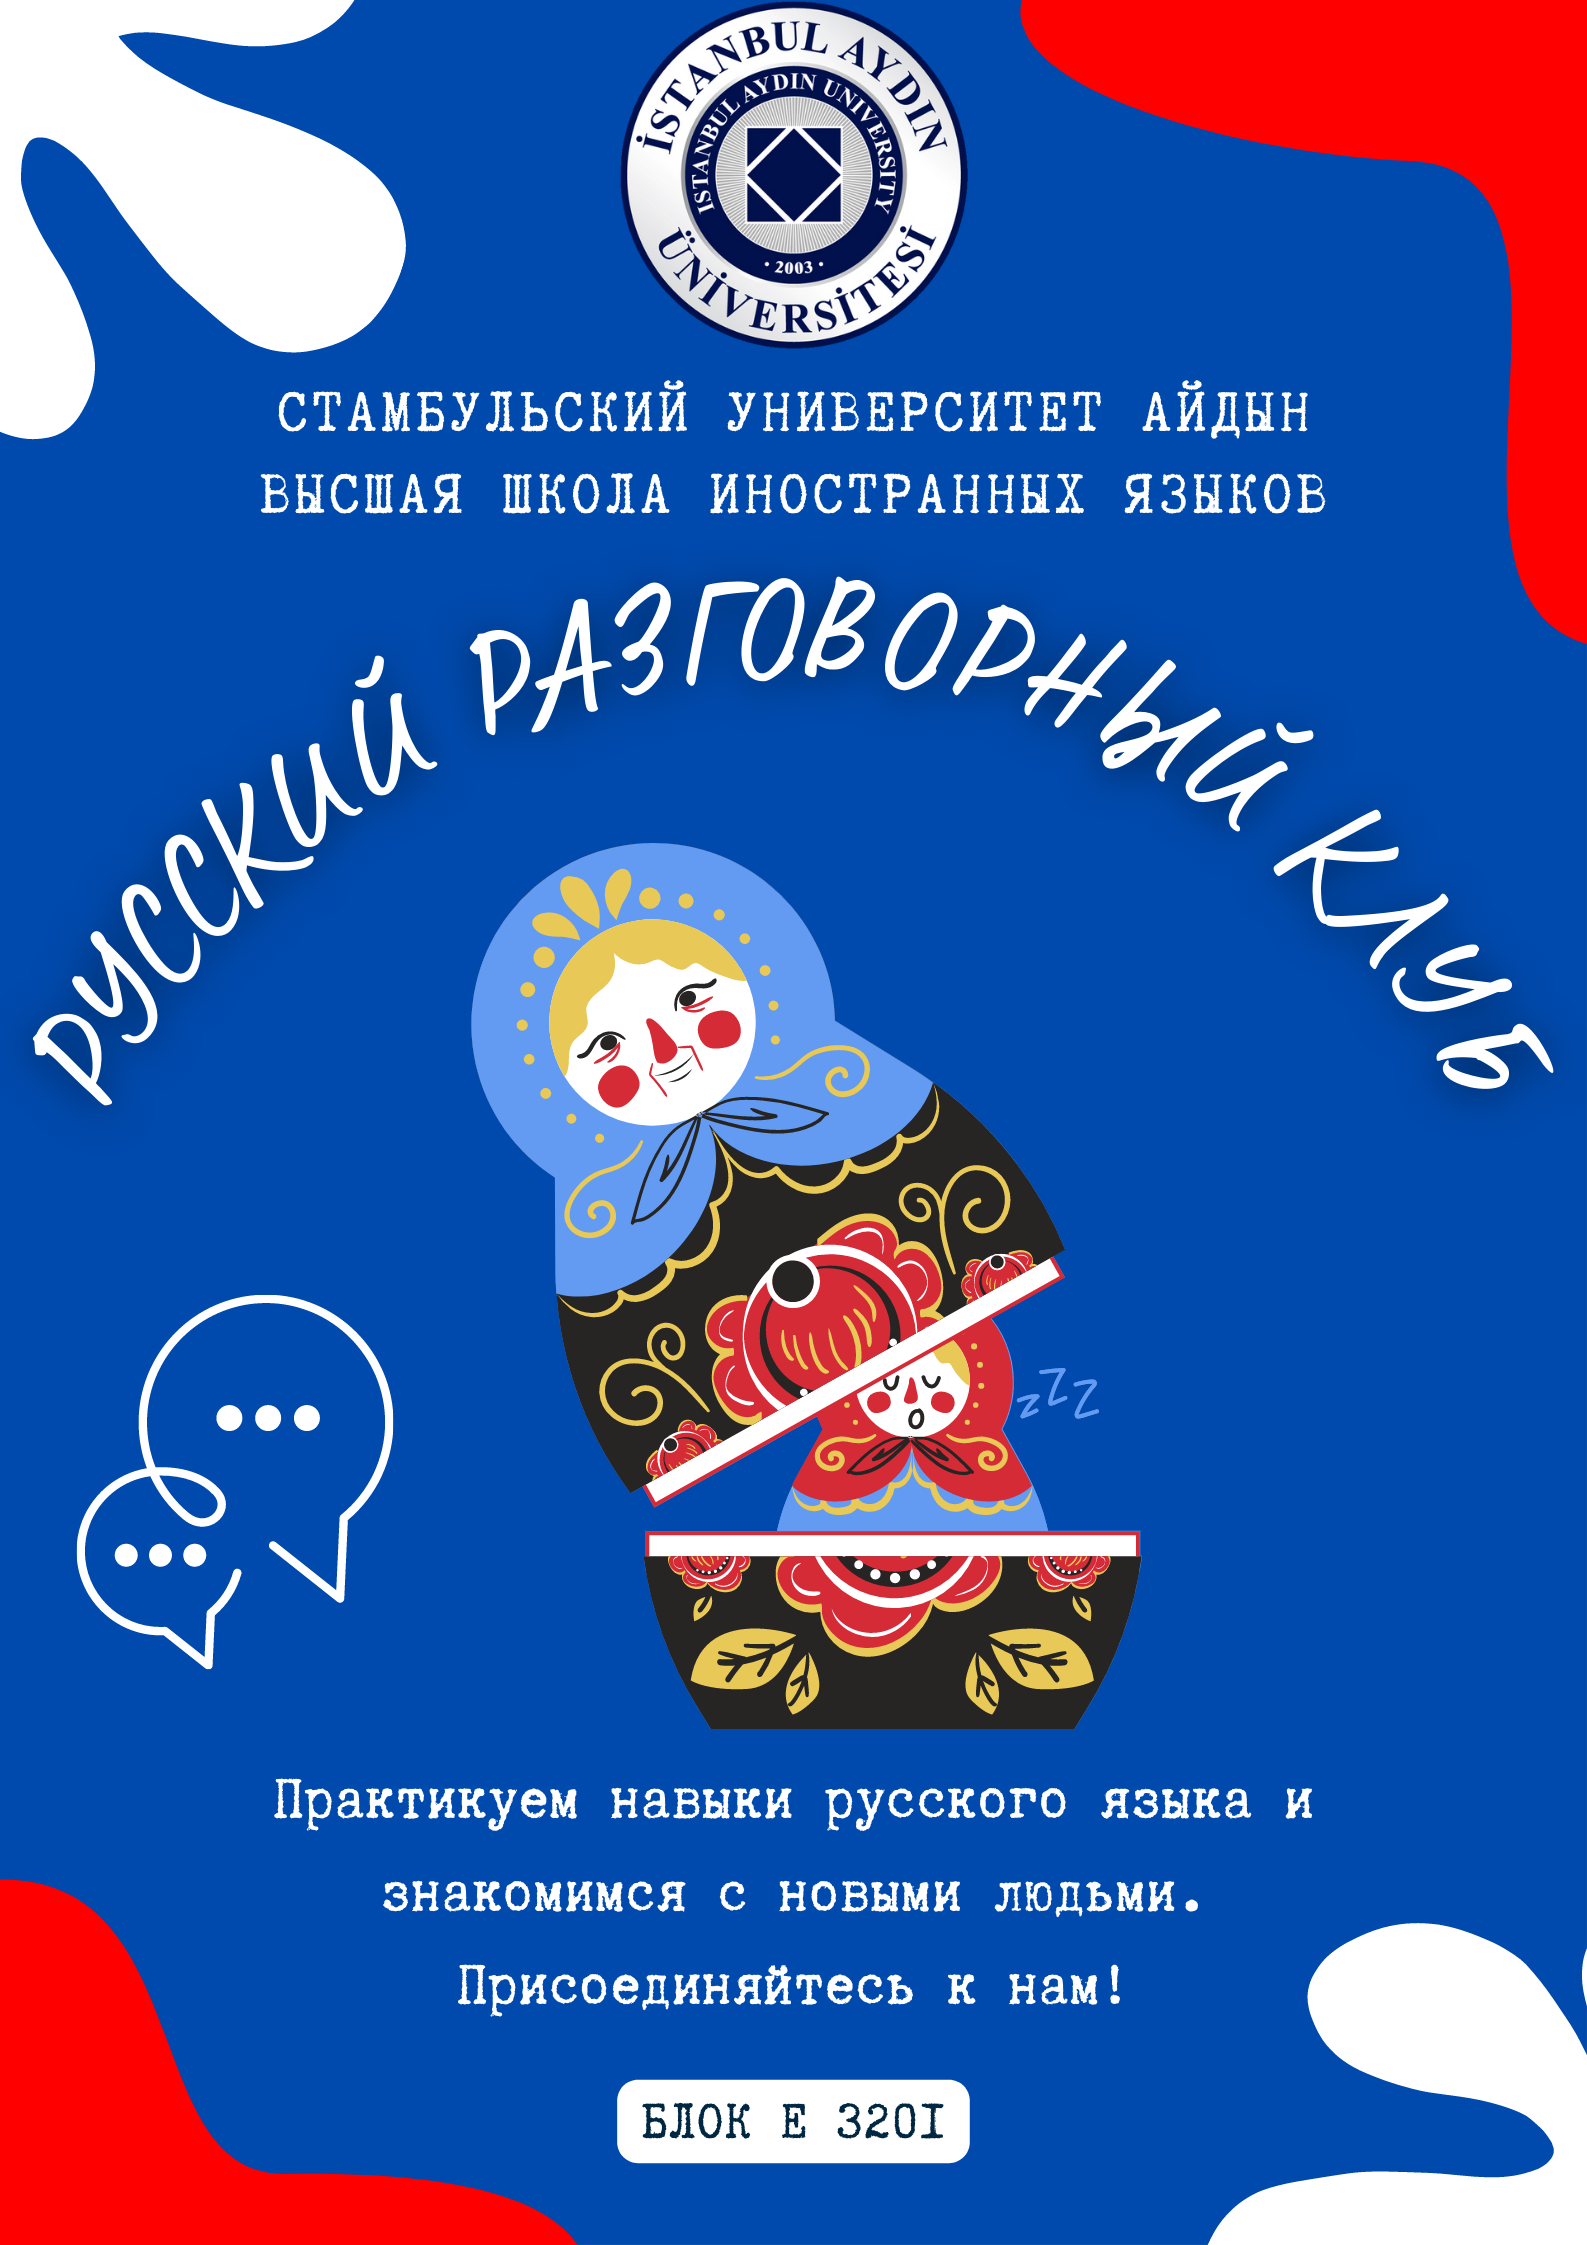 Rusça Konuşma Kulübü Afişi.png